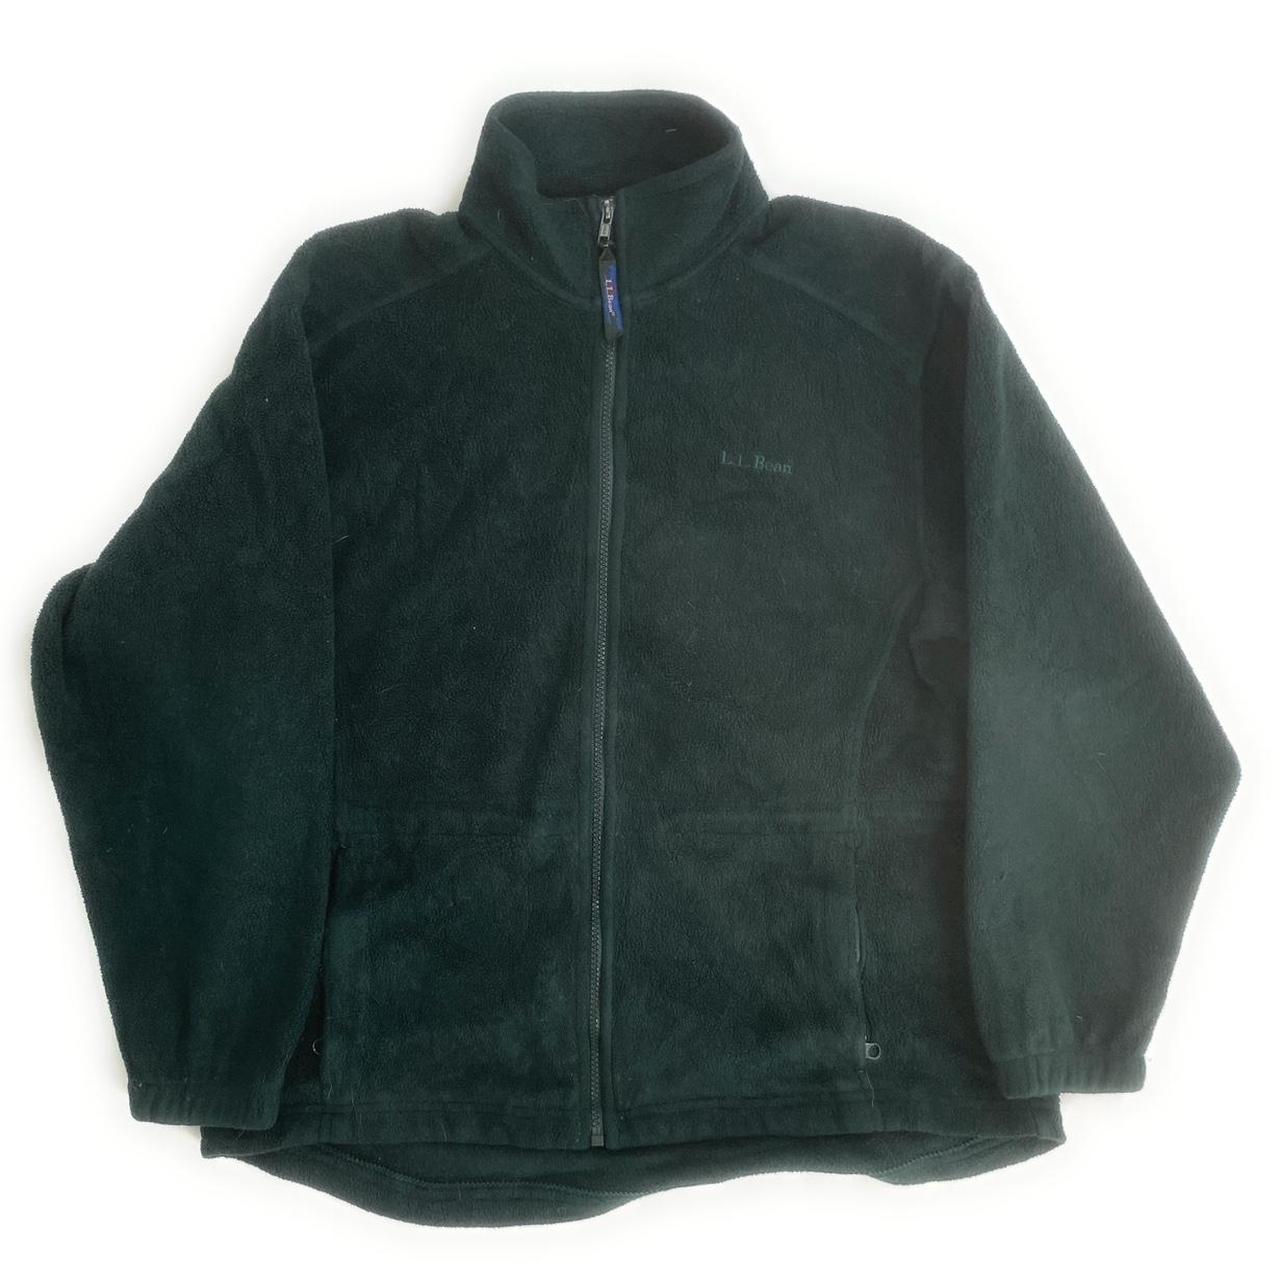 L.L.Bean fleece jacket ️ LLBean fleece jacket ... - Depop